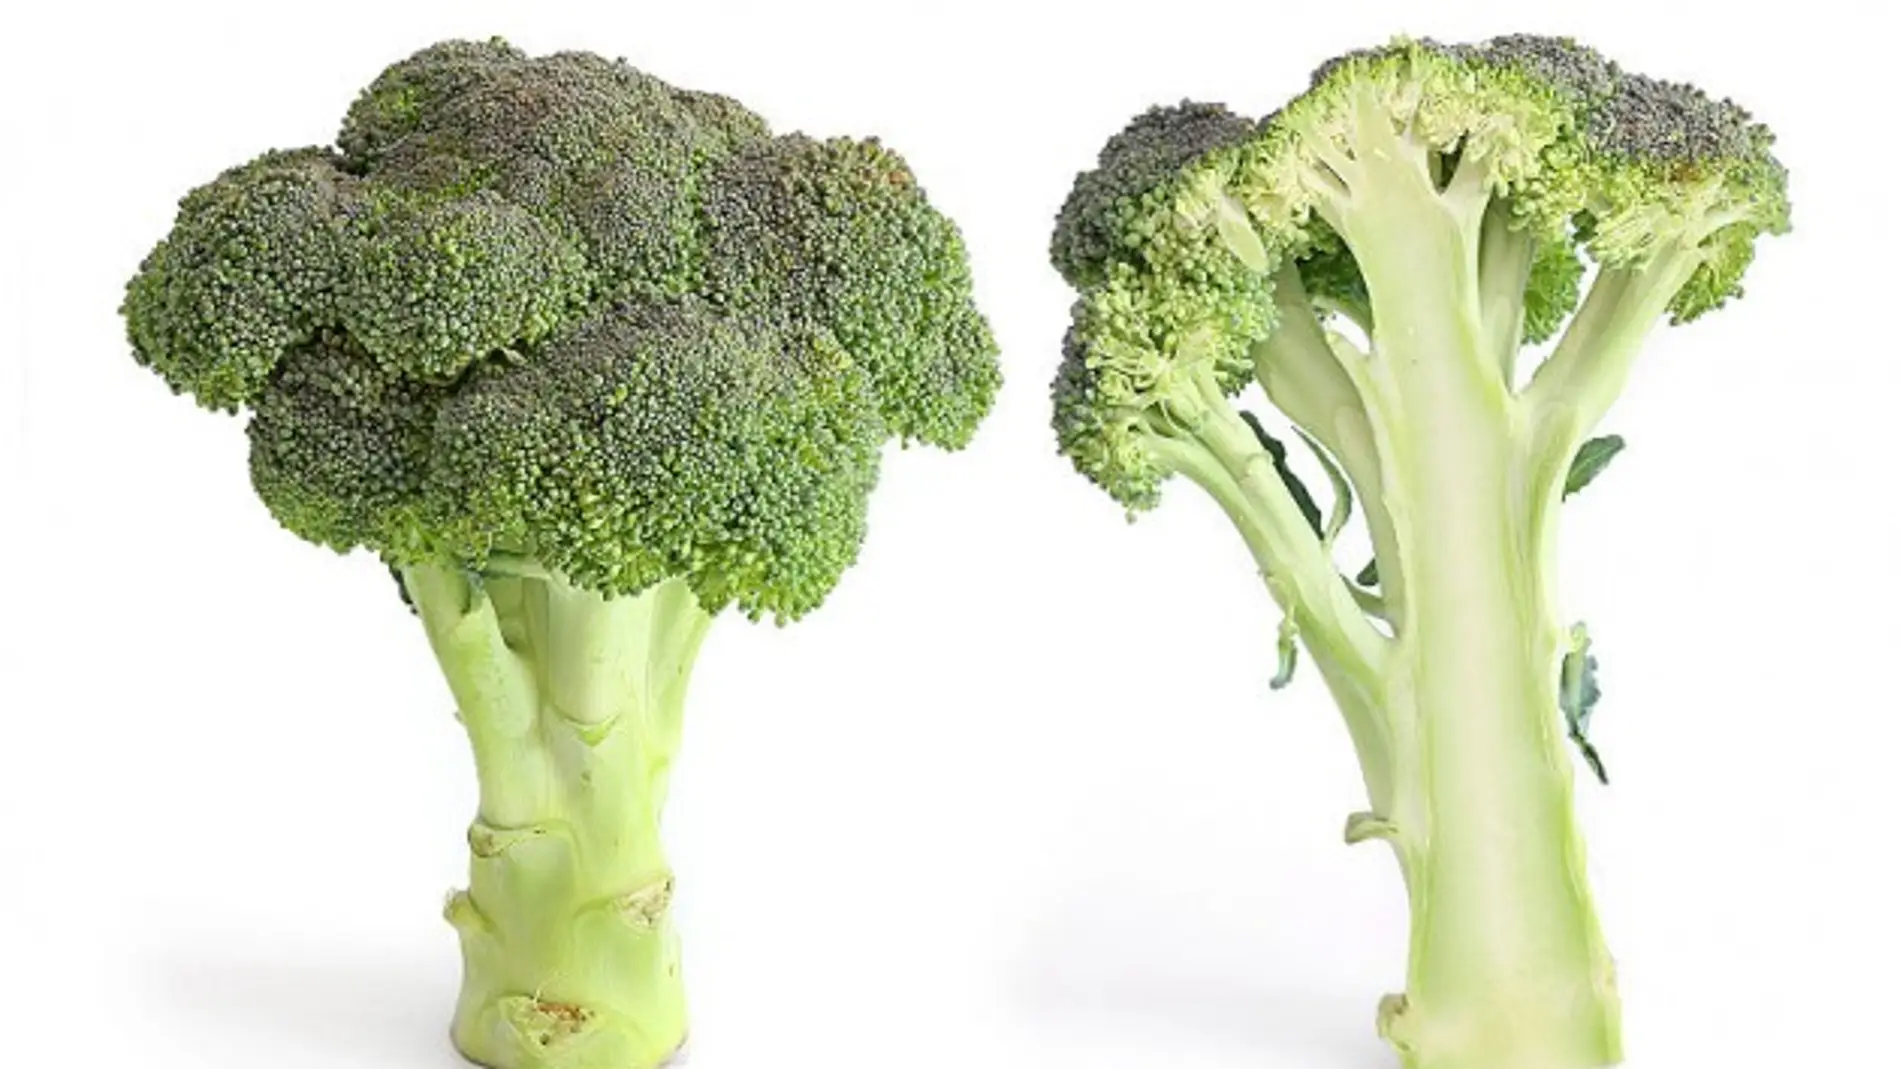 Vegetales como el brócoli sirven para crear compuestos que pueden proteger frente a la radiación